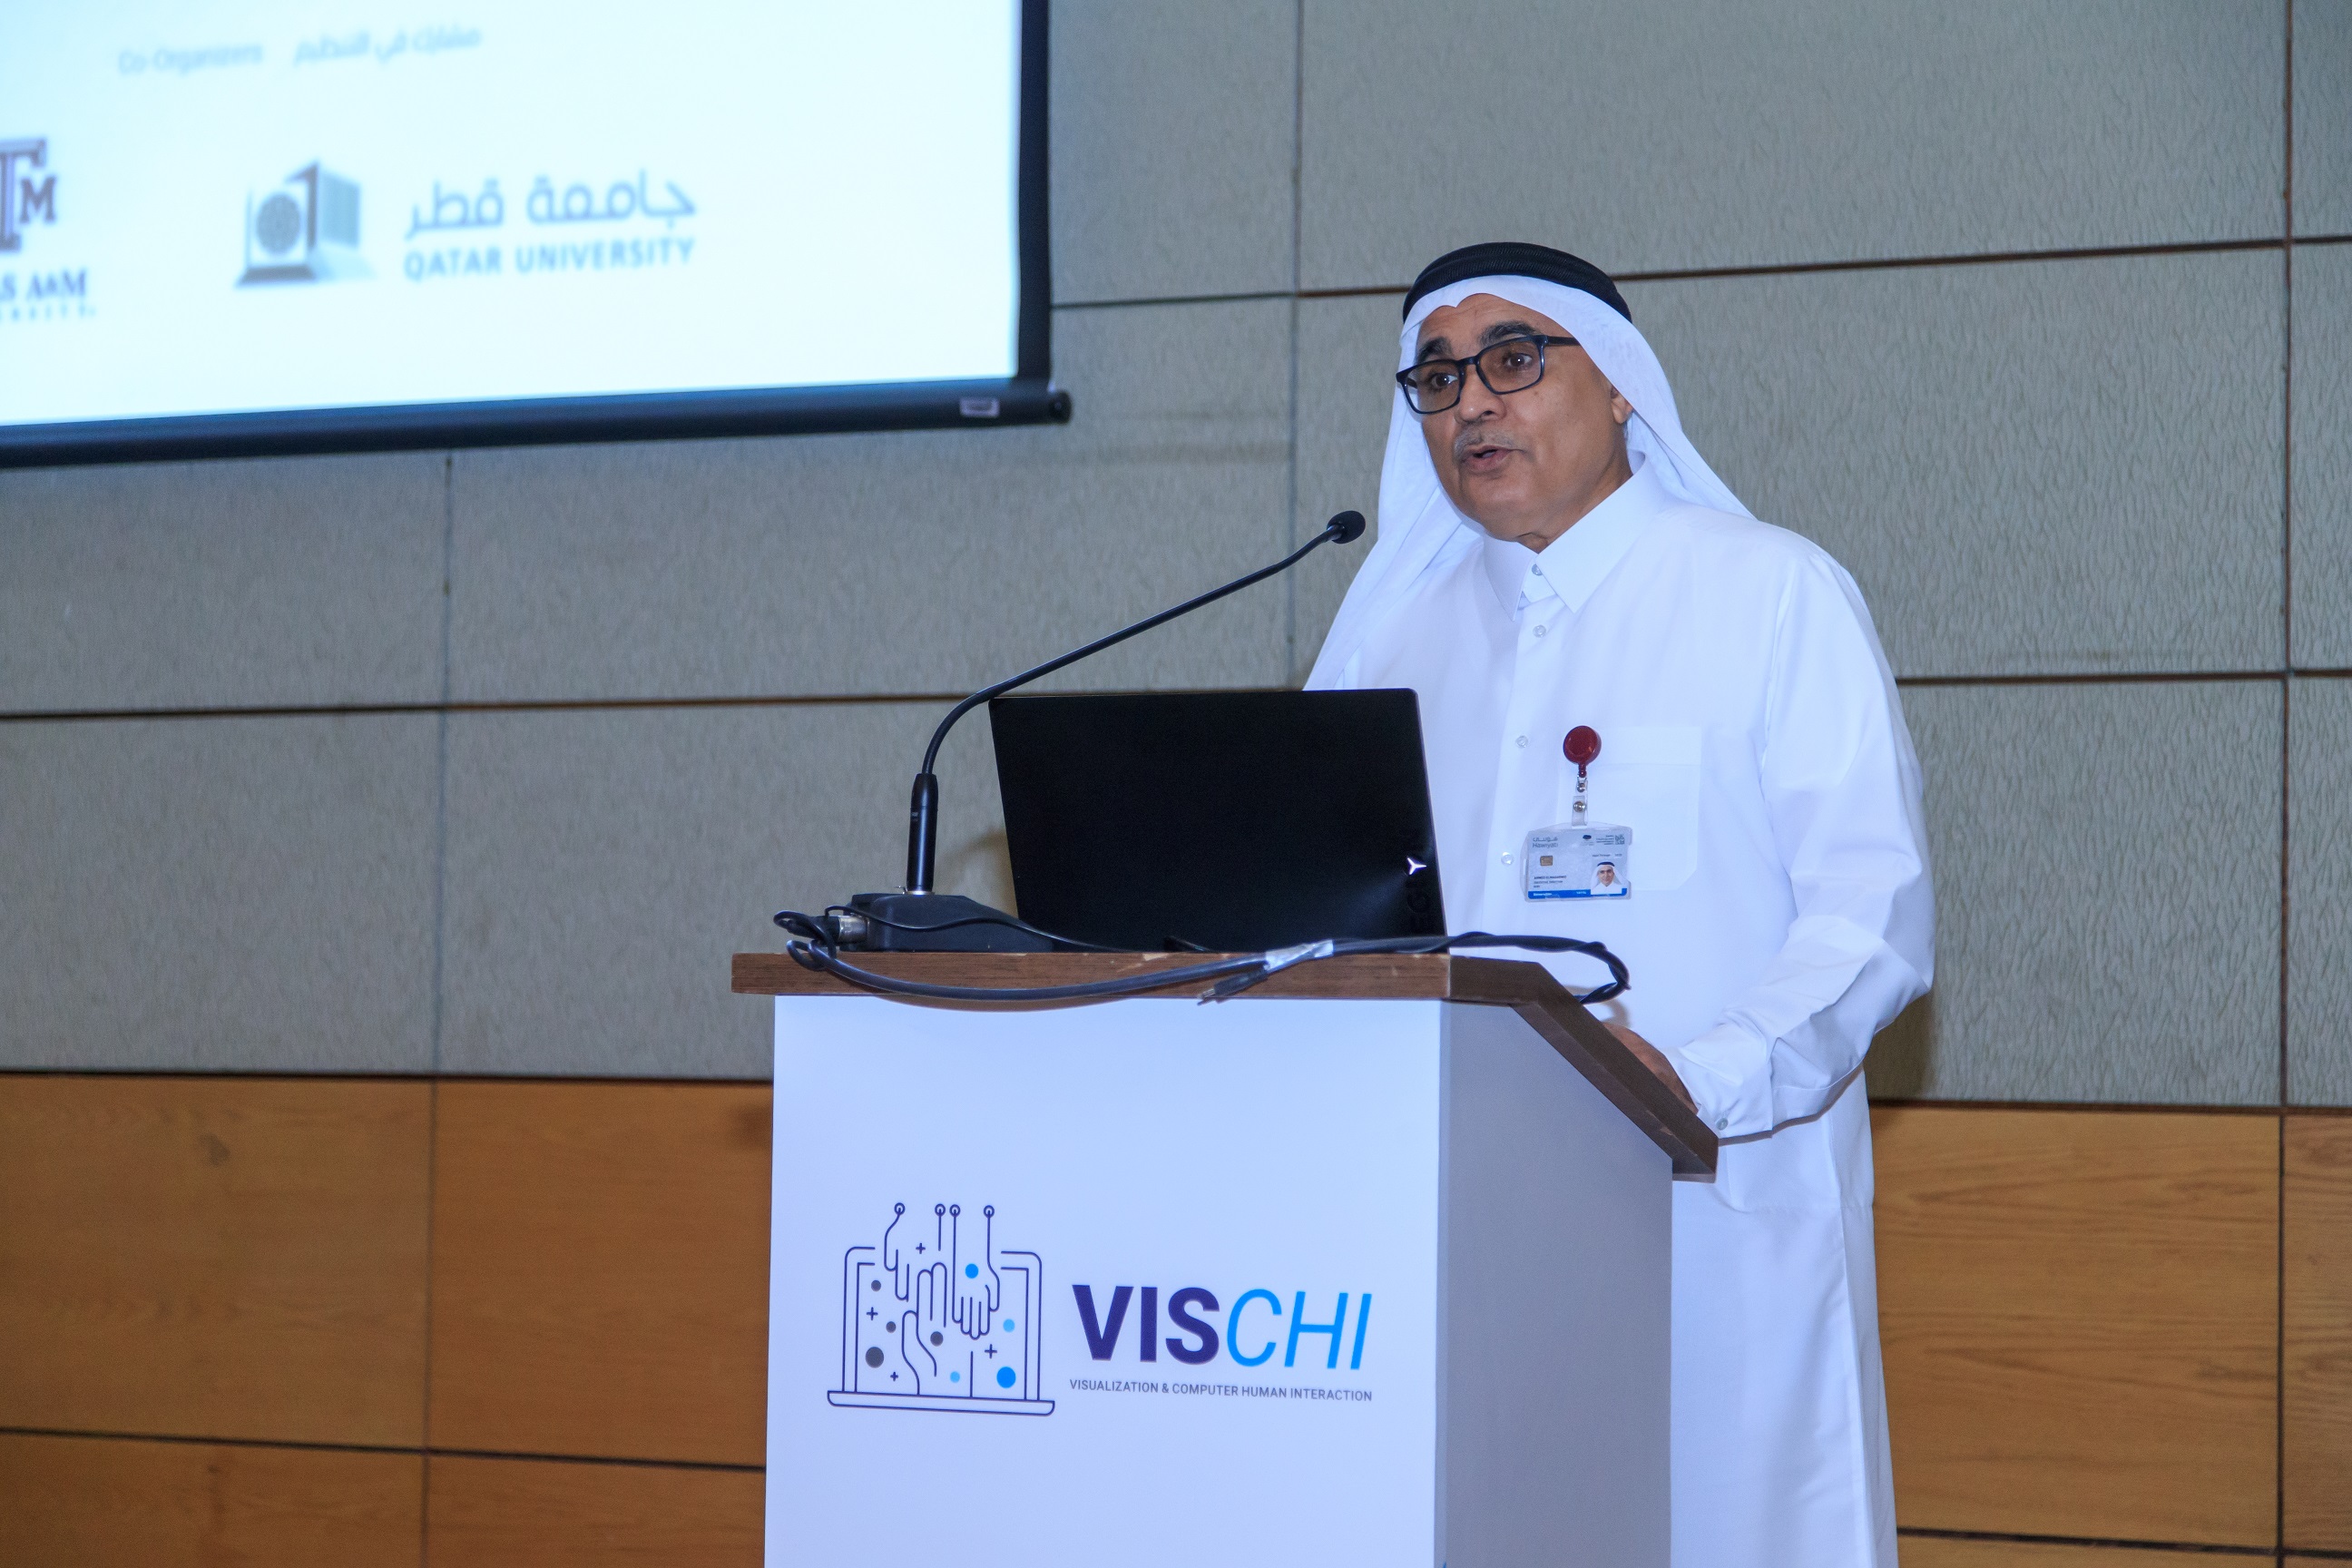 الدكتور أحمد المقرمد، المدير التنفيذي لمعهد قطر لبحوث الحوسبة، وهو جزء من جامعة حمد بن خليفة، خلال المؤتمر.